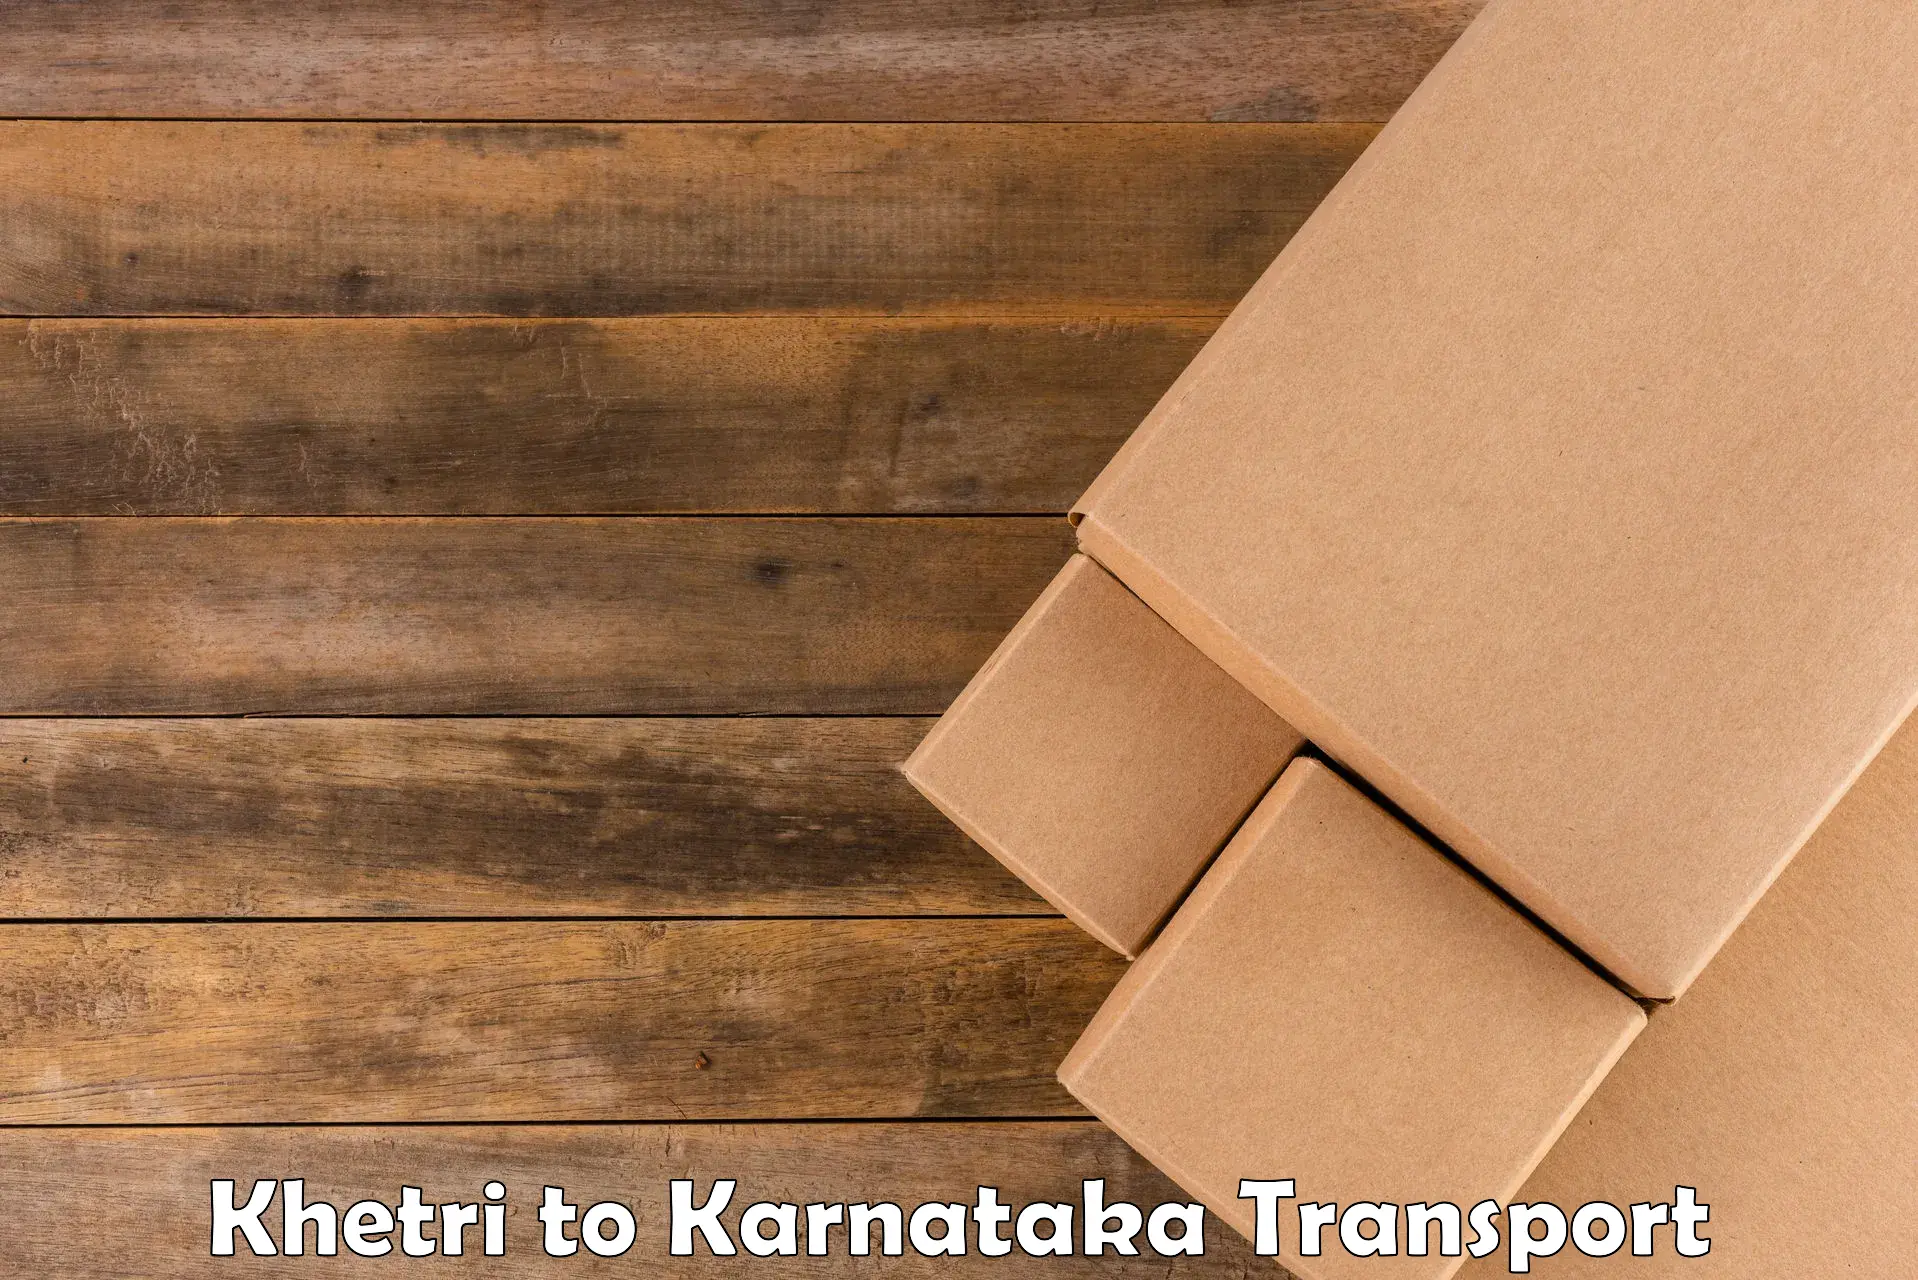 Parcel transport services Khetri to Mangalore Port